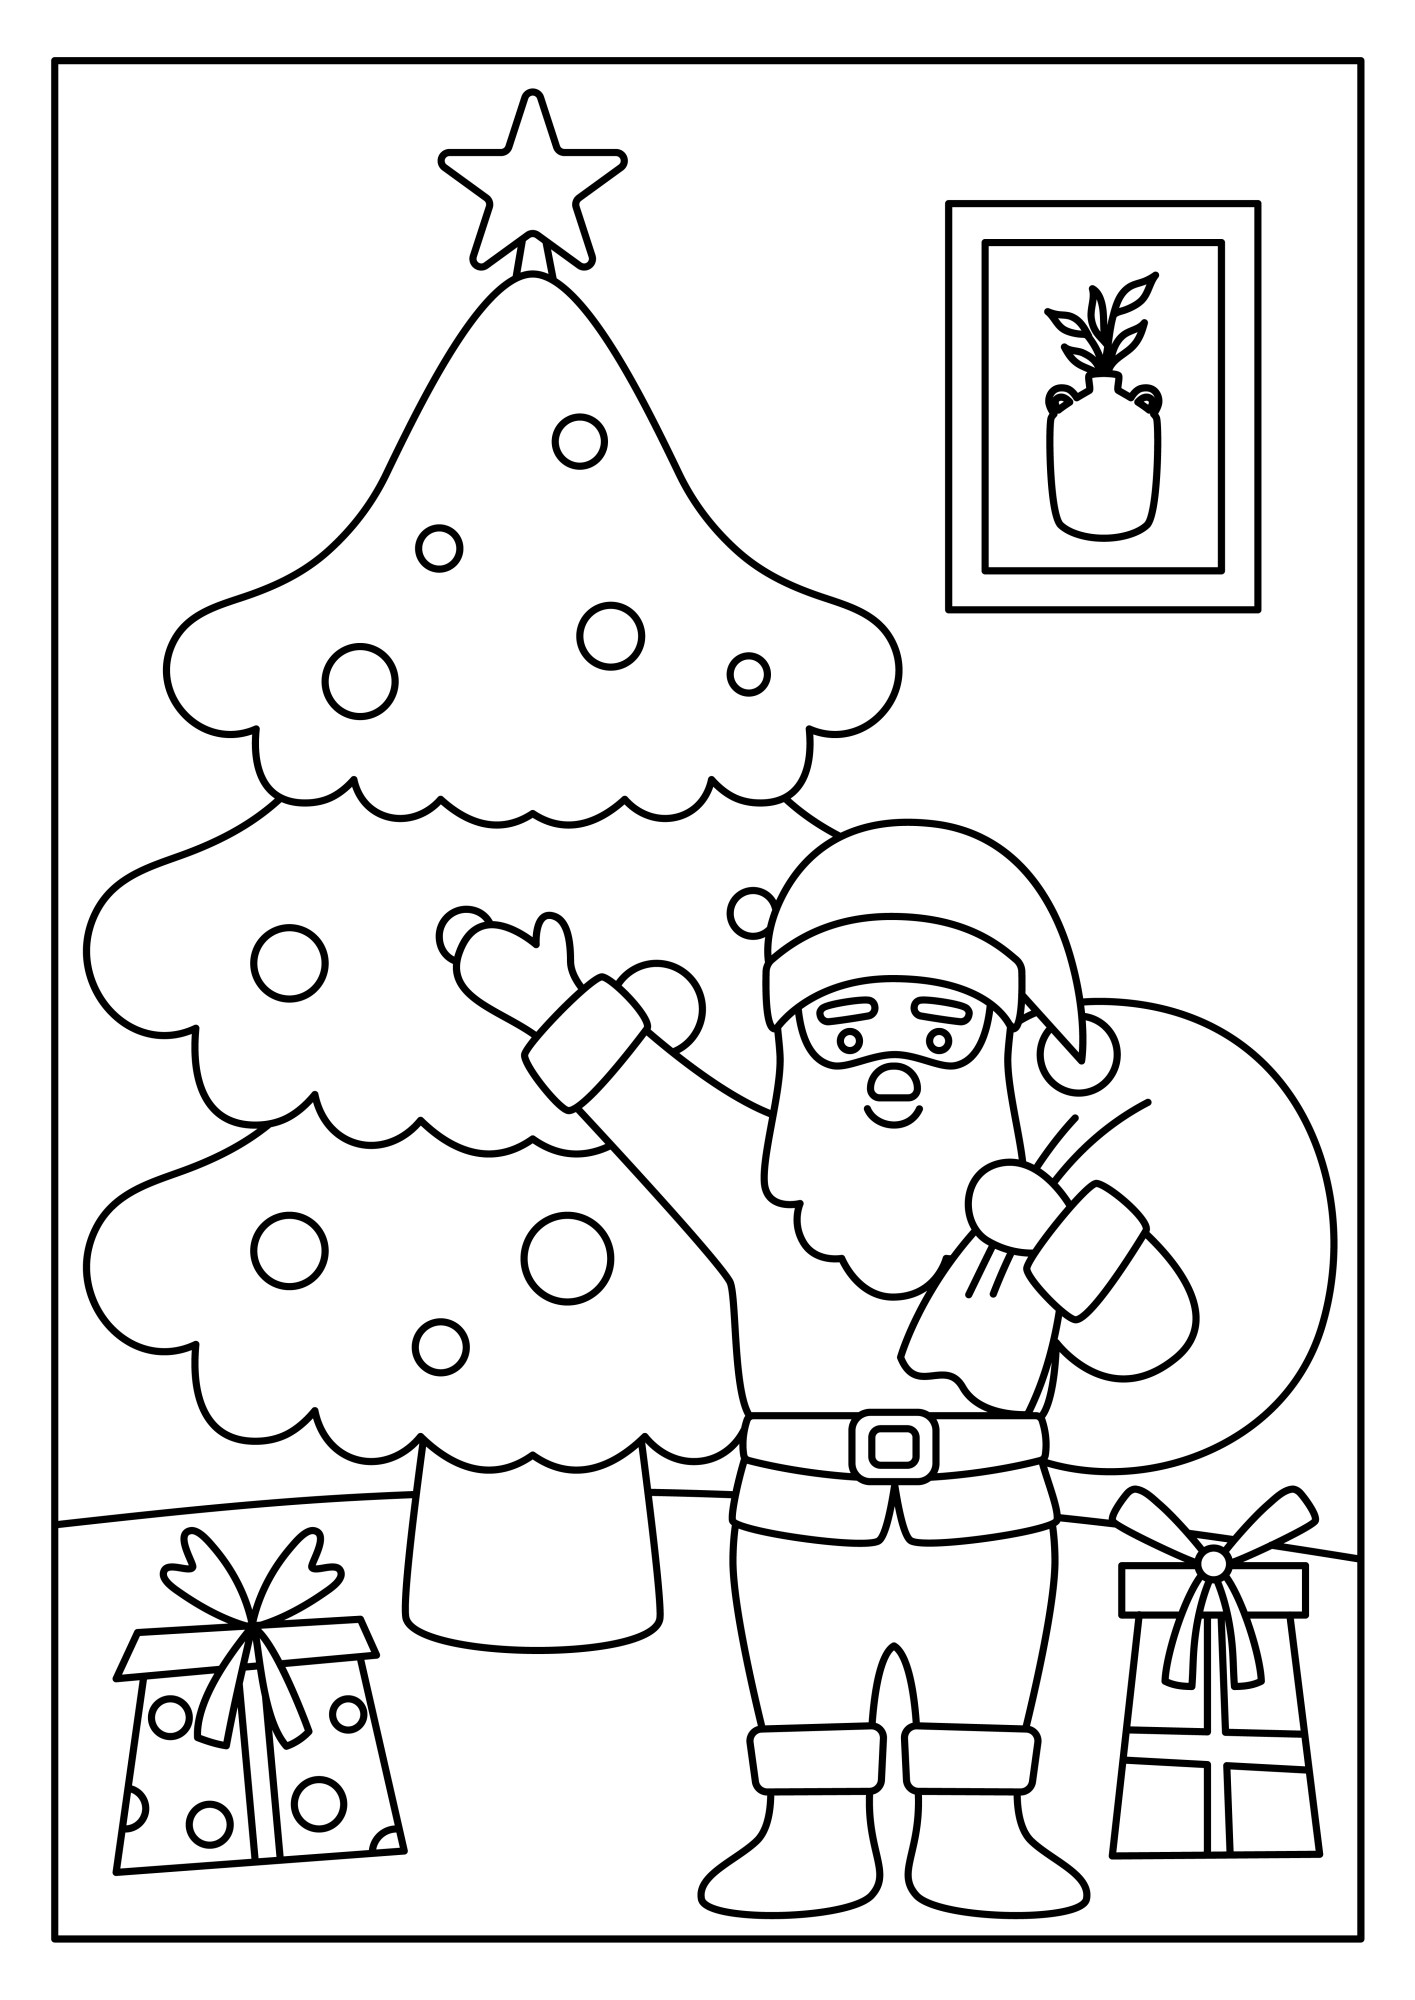 Раскраска для детей: новогодняя ёлка со звездой и дед мороз